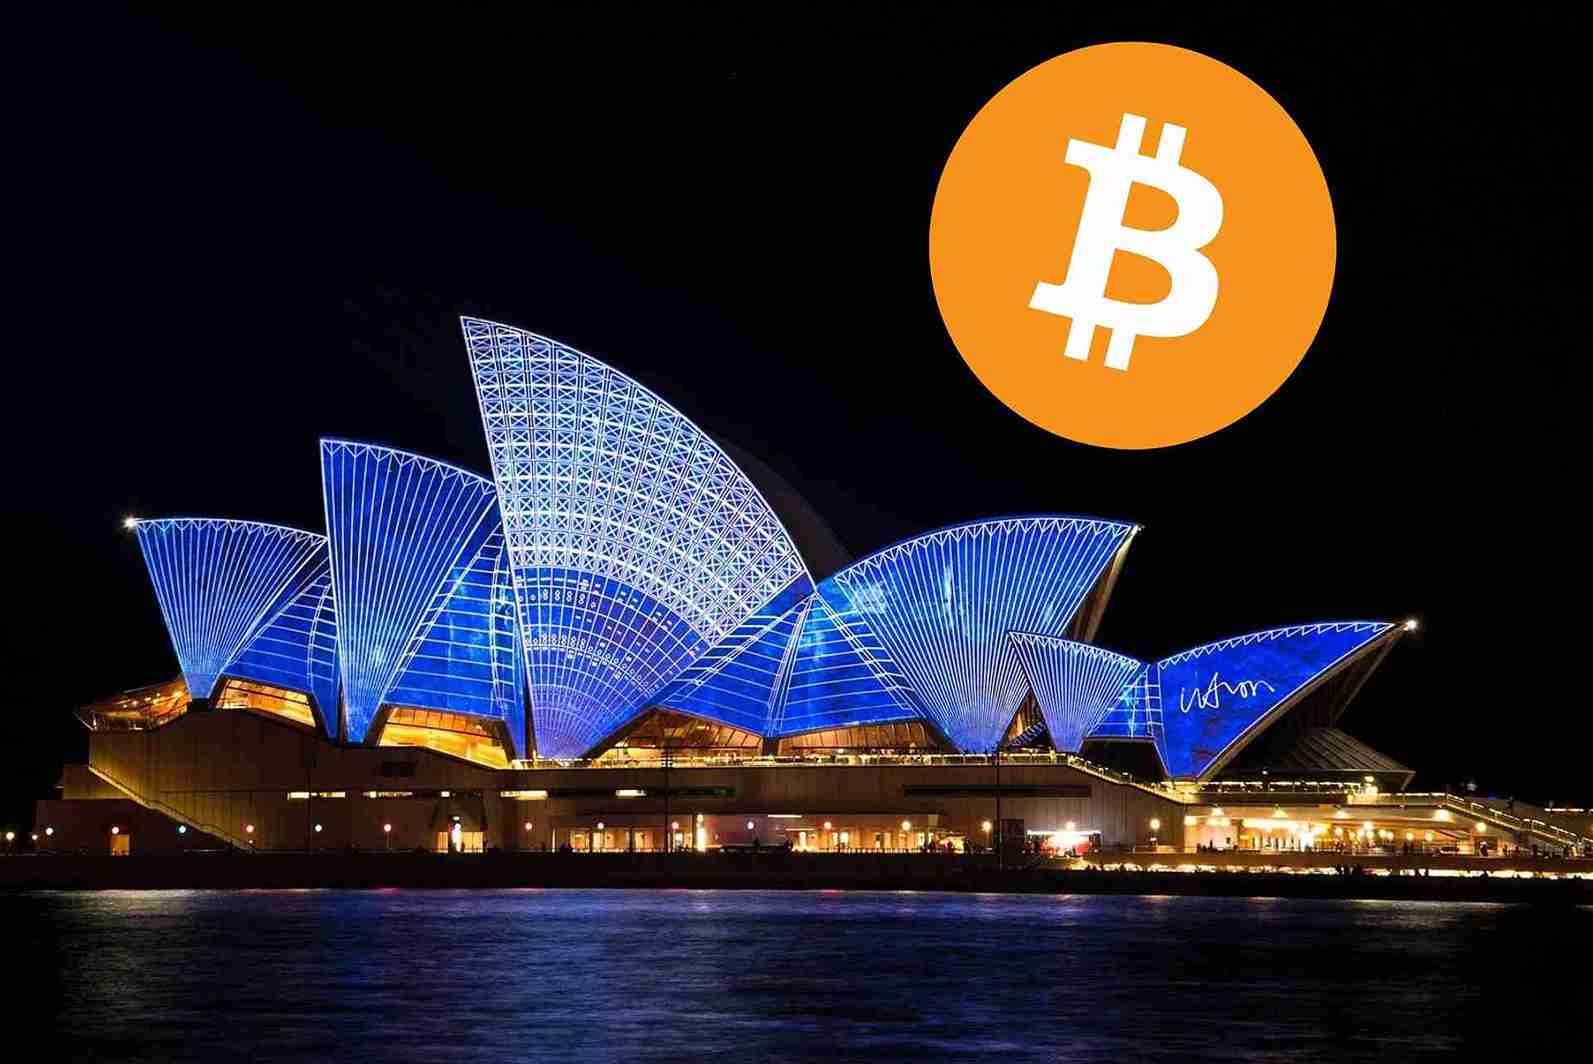 Opera w Sydney (Australia) nocą. Nad budynkiem logo Bitcoina zamiast księżyca.